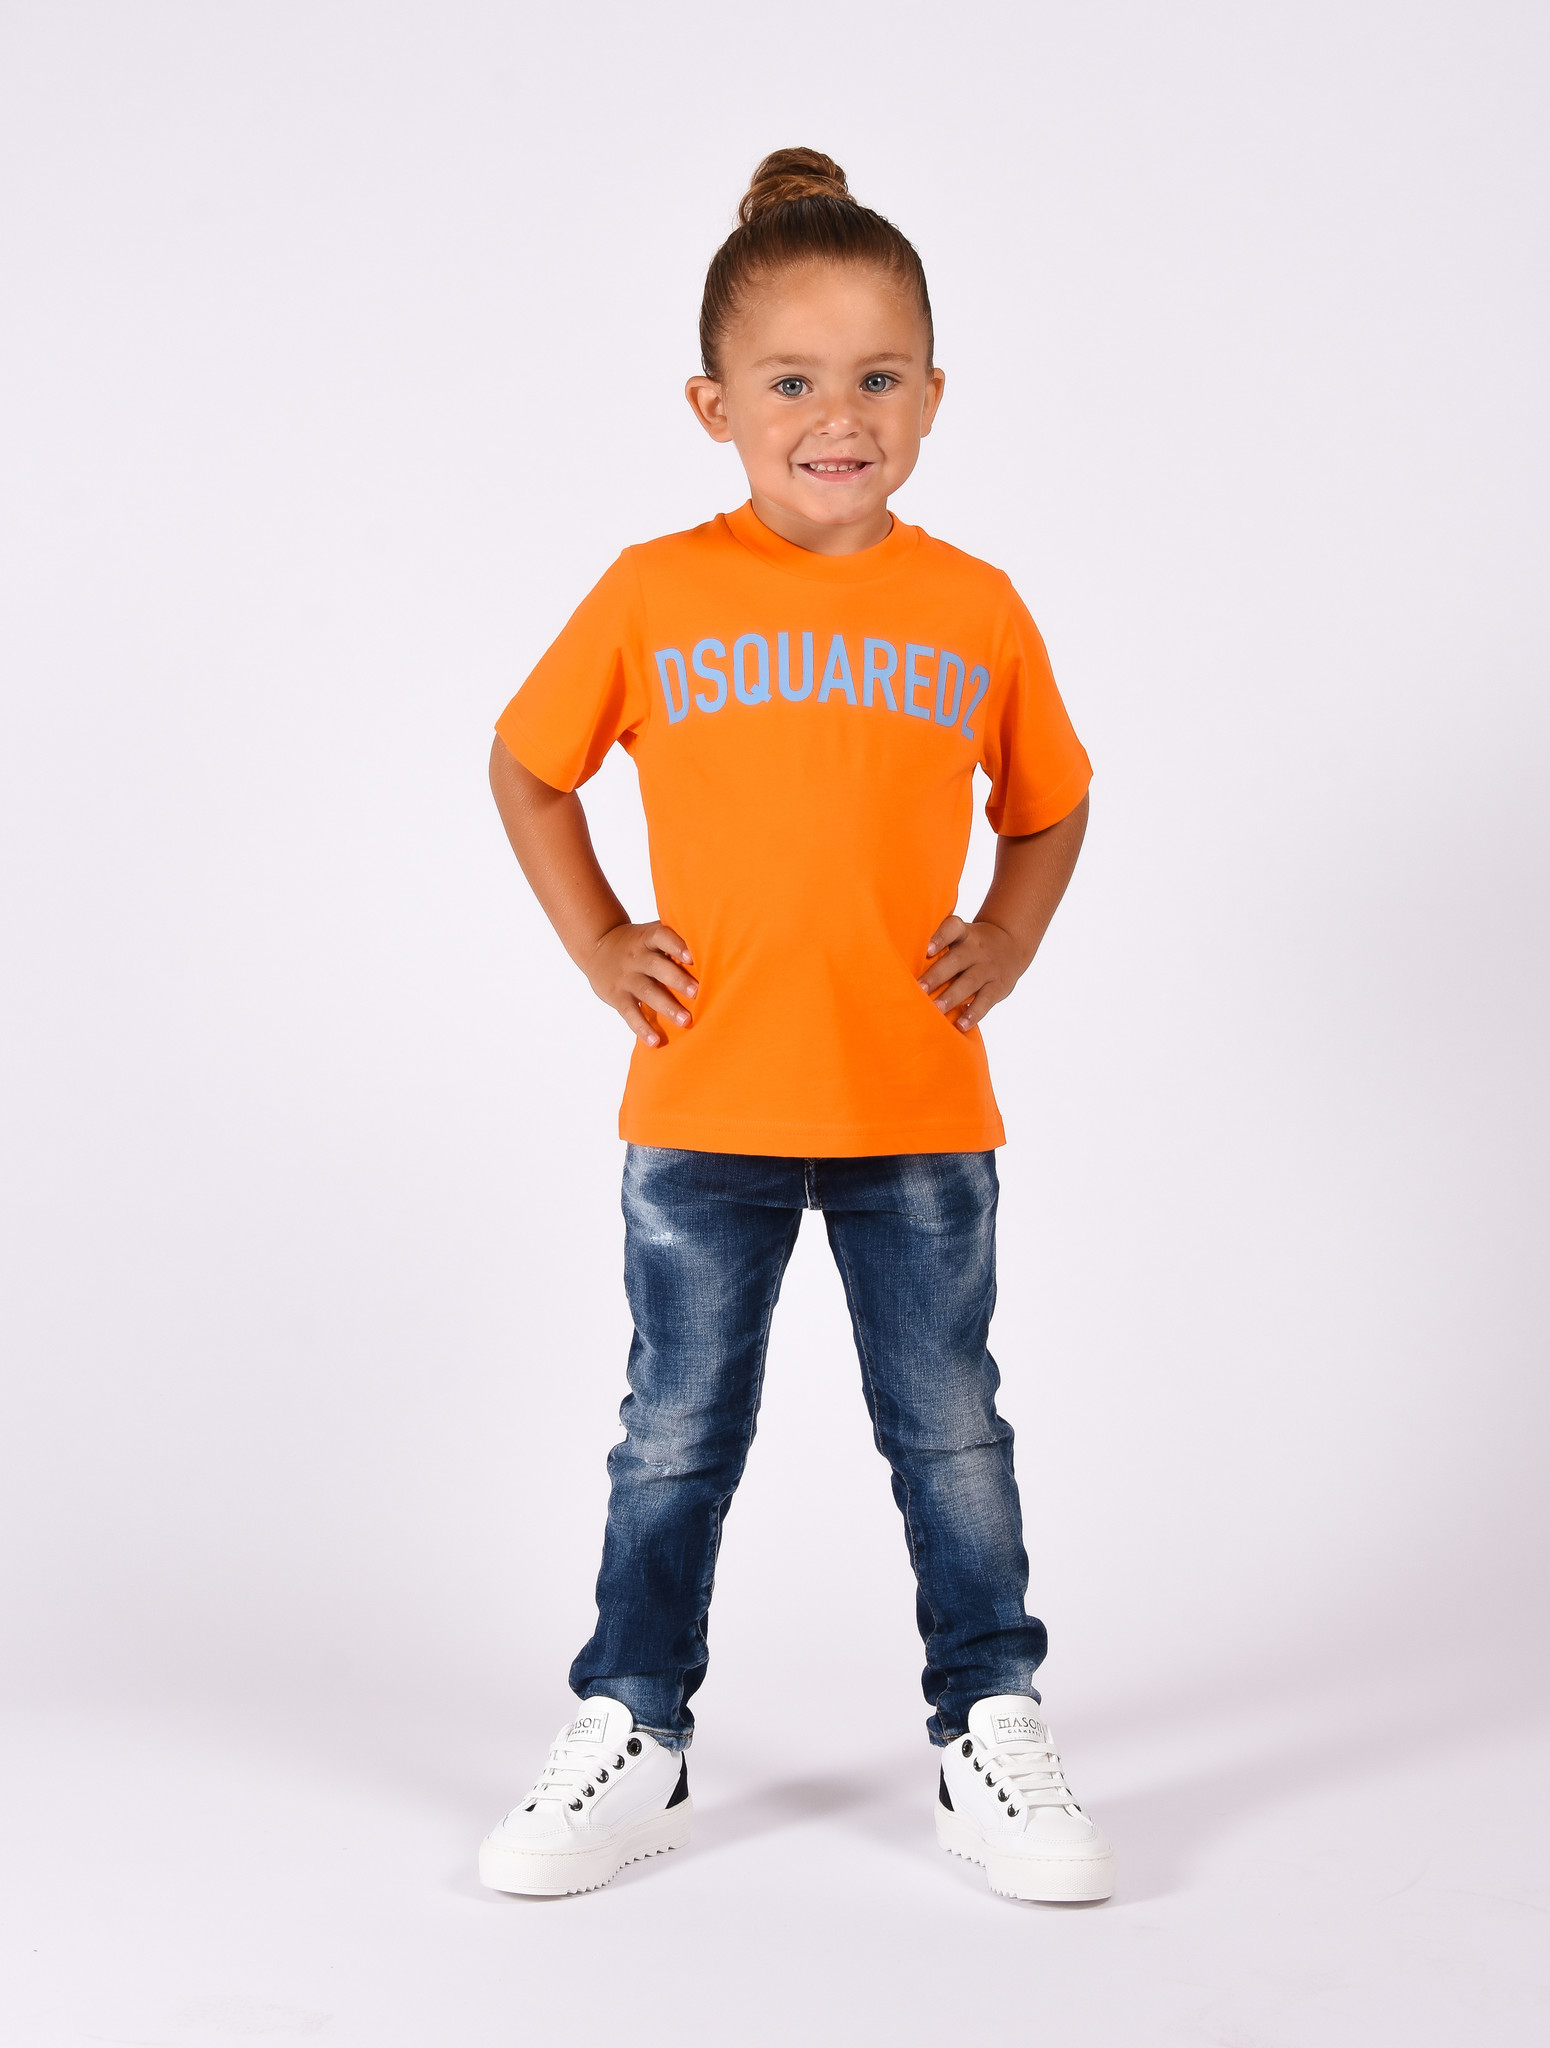 elleboog Herhaald impliceren Dsquared2 Kids FW22 T-shirt Slouch Fit - Orange - Ikke Kids